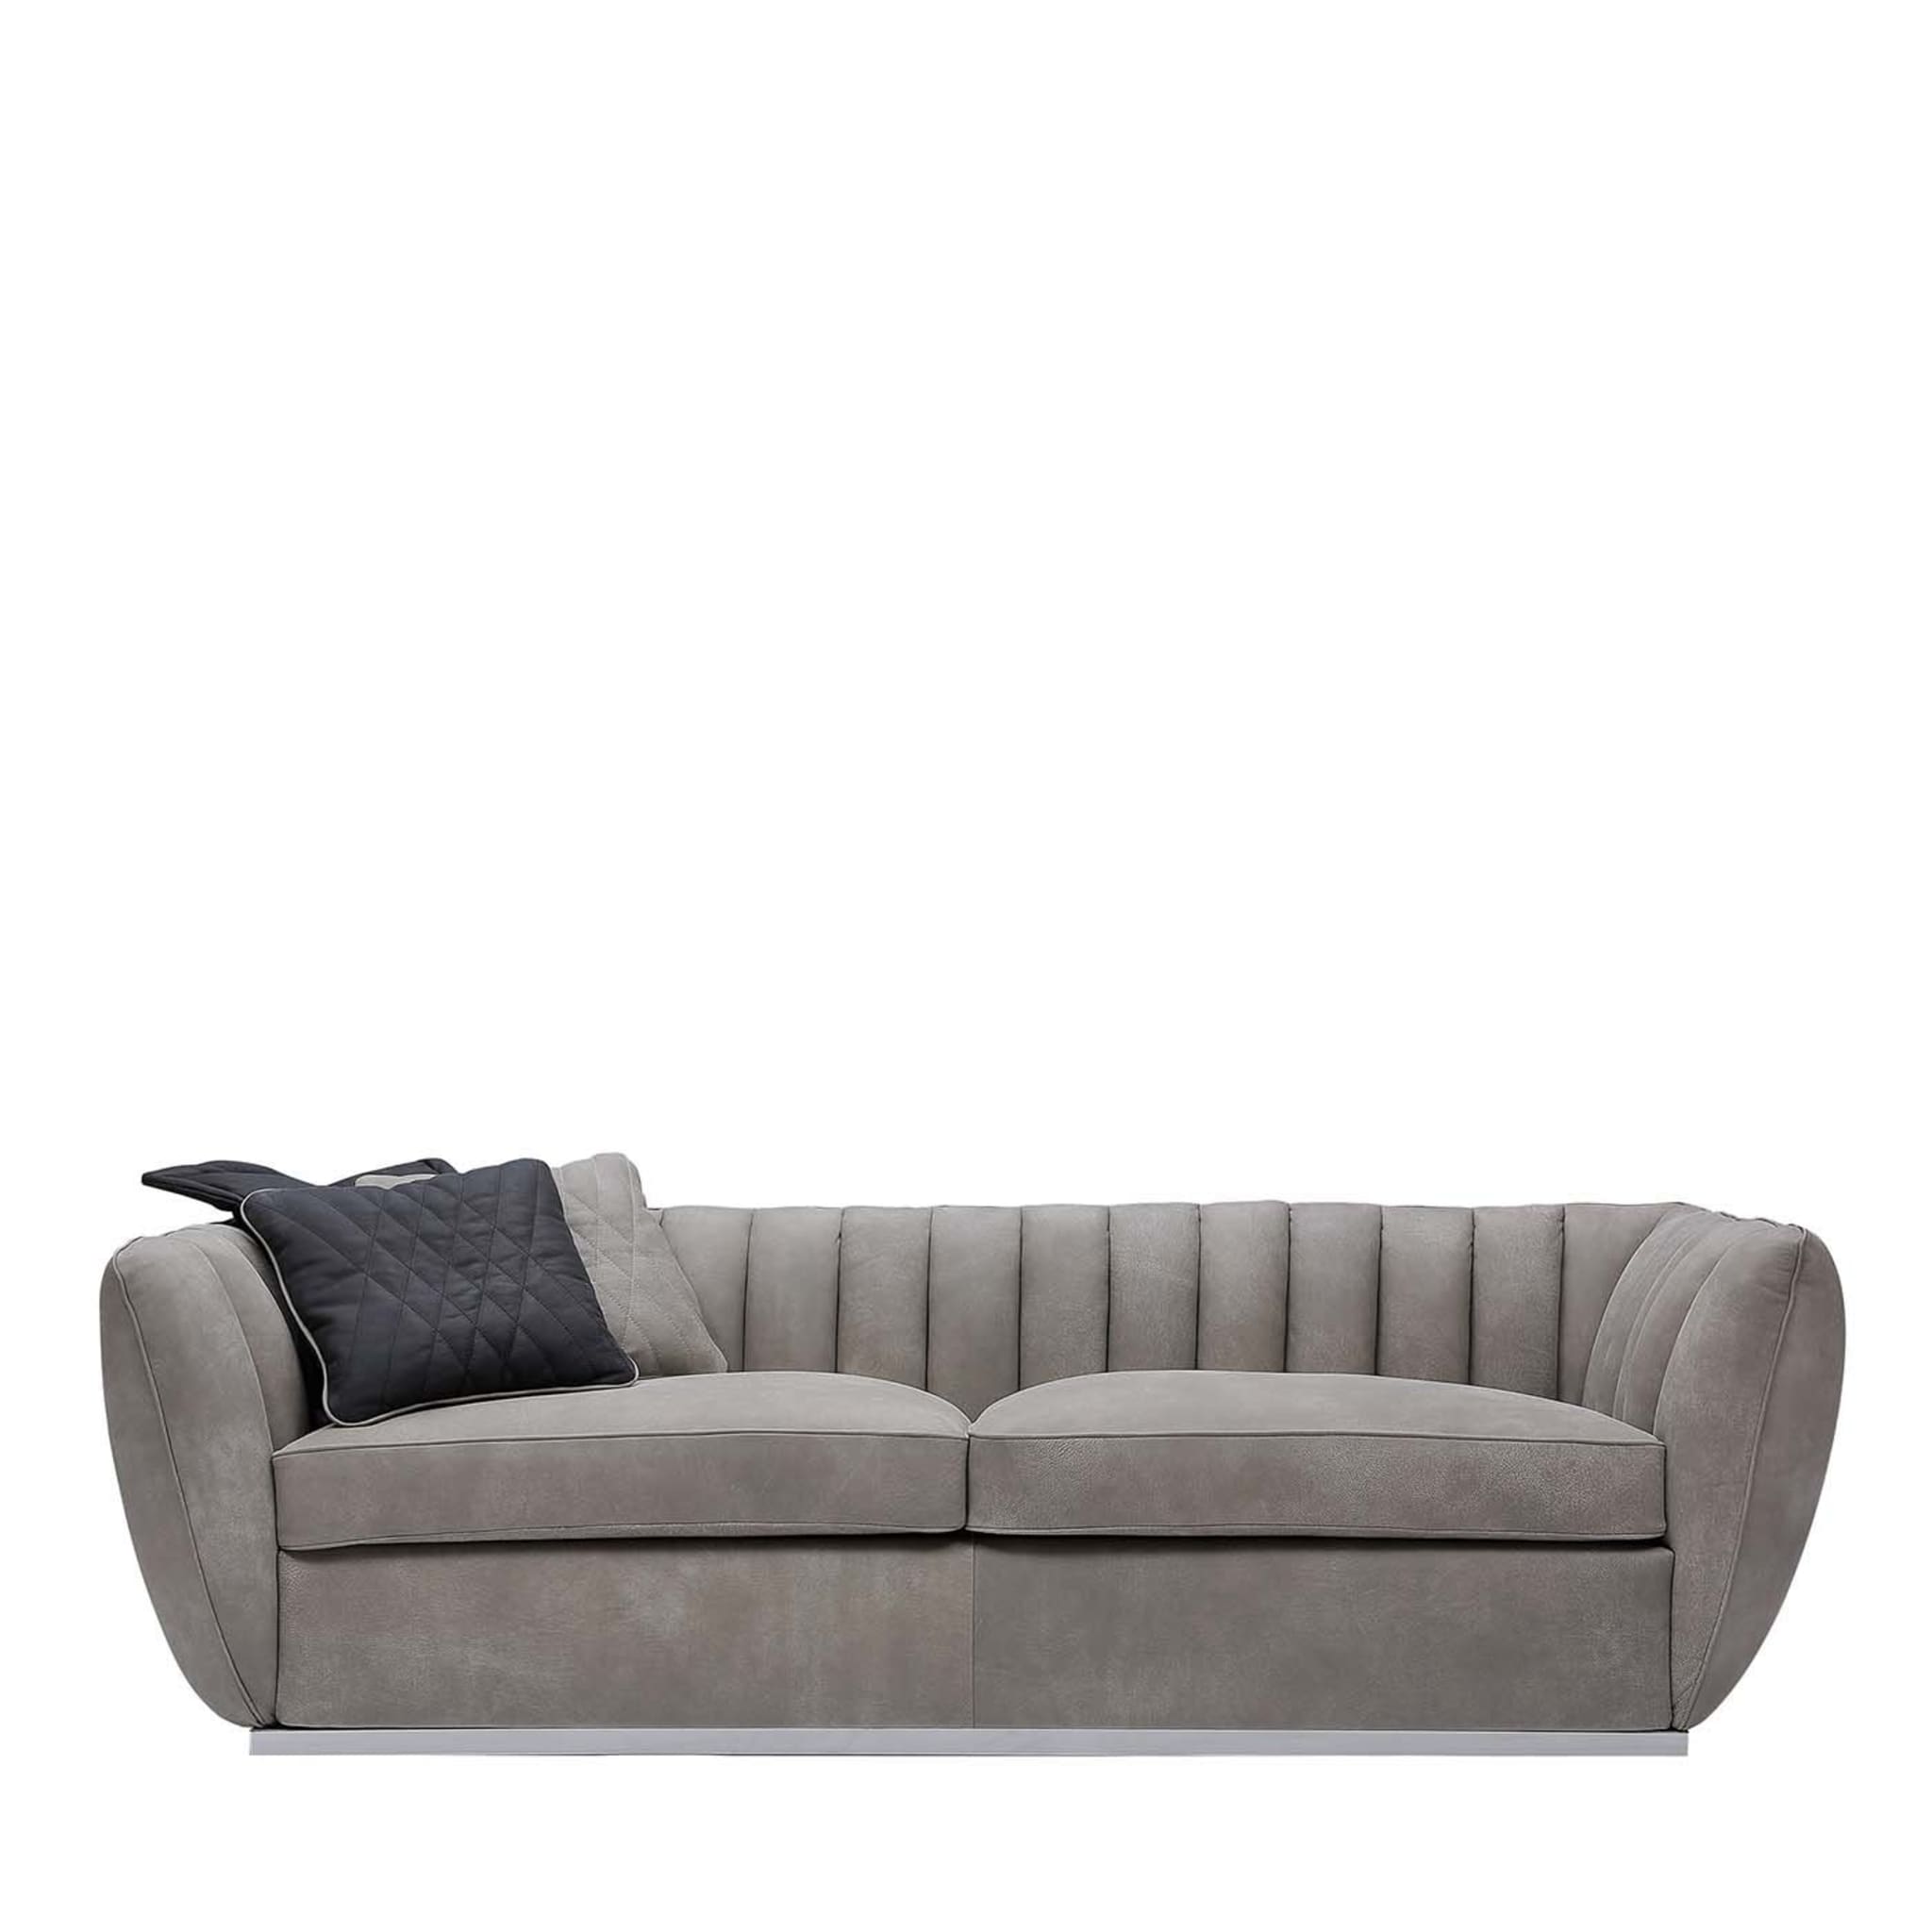 Mistral Gray Sofa - Main view